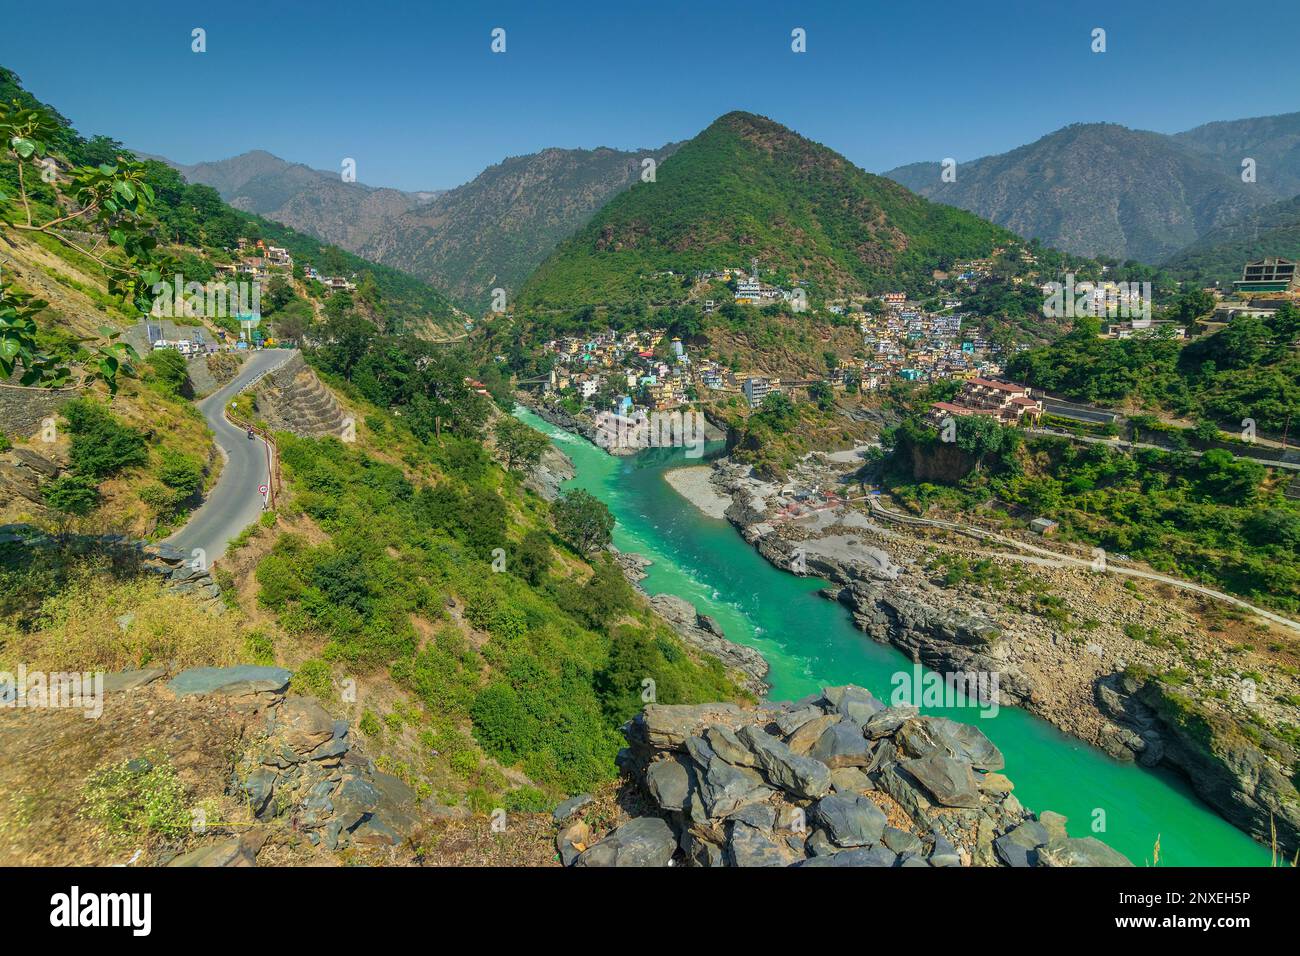 Route sinueuse à Devprayag, Godly Confluence, Garhwal, Uttarakhand, Inde. Ici, Alaknanda rencontre la rivière Bhagirathi et forme la rivière Ganges. Inde. Banque D'Images